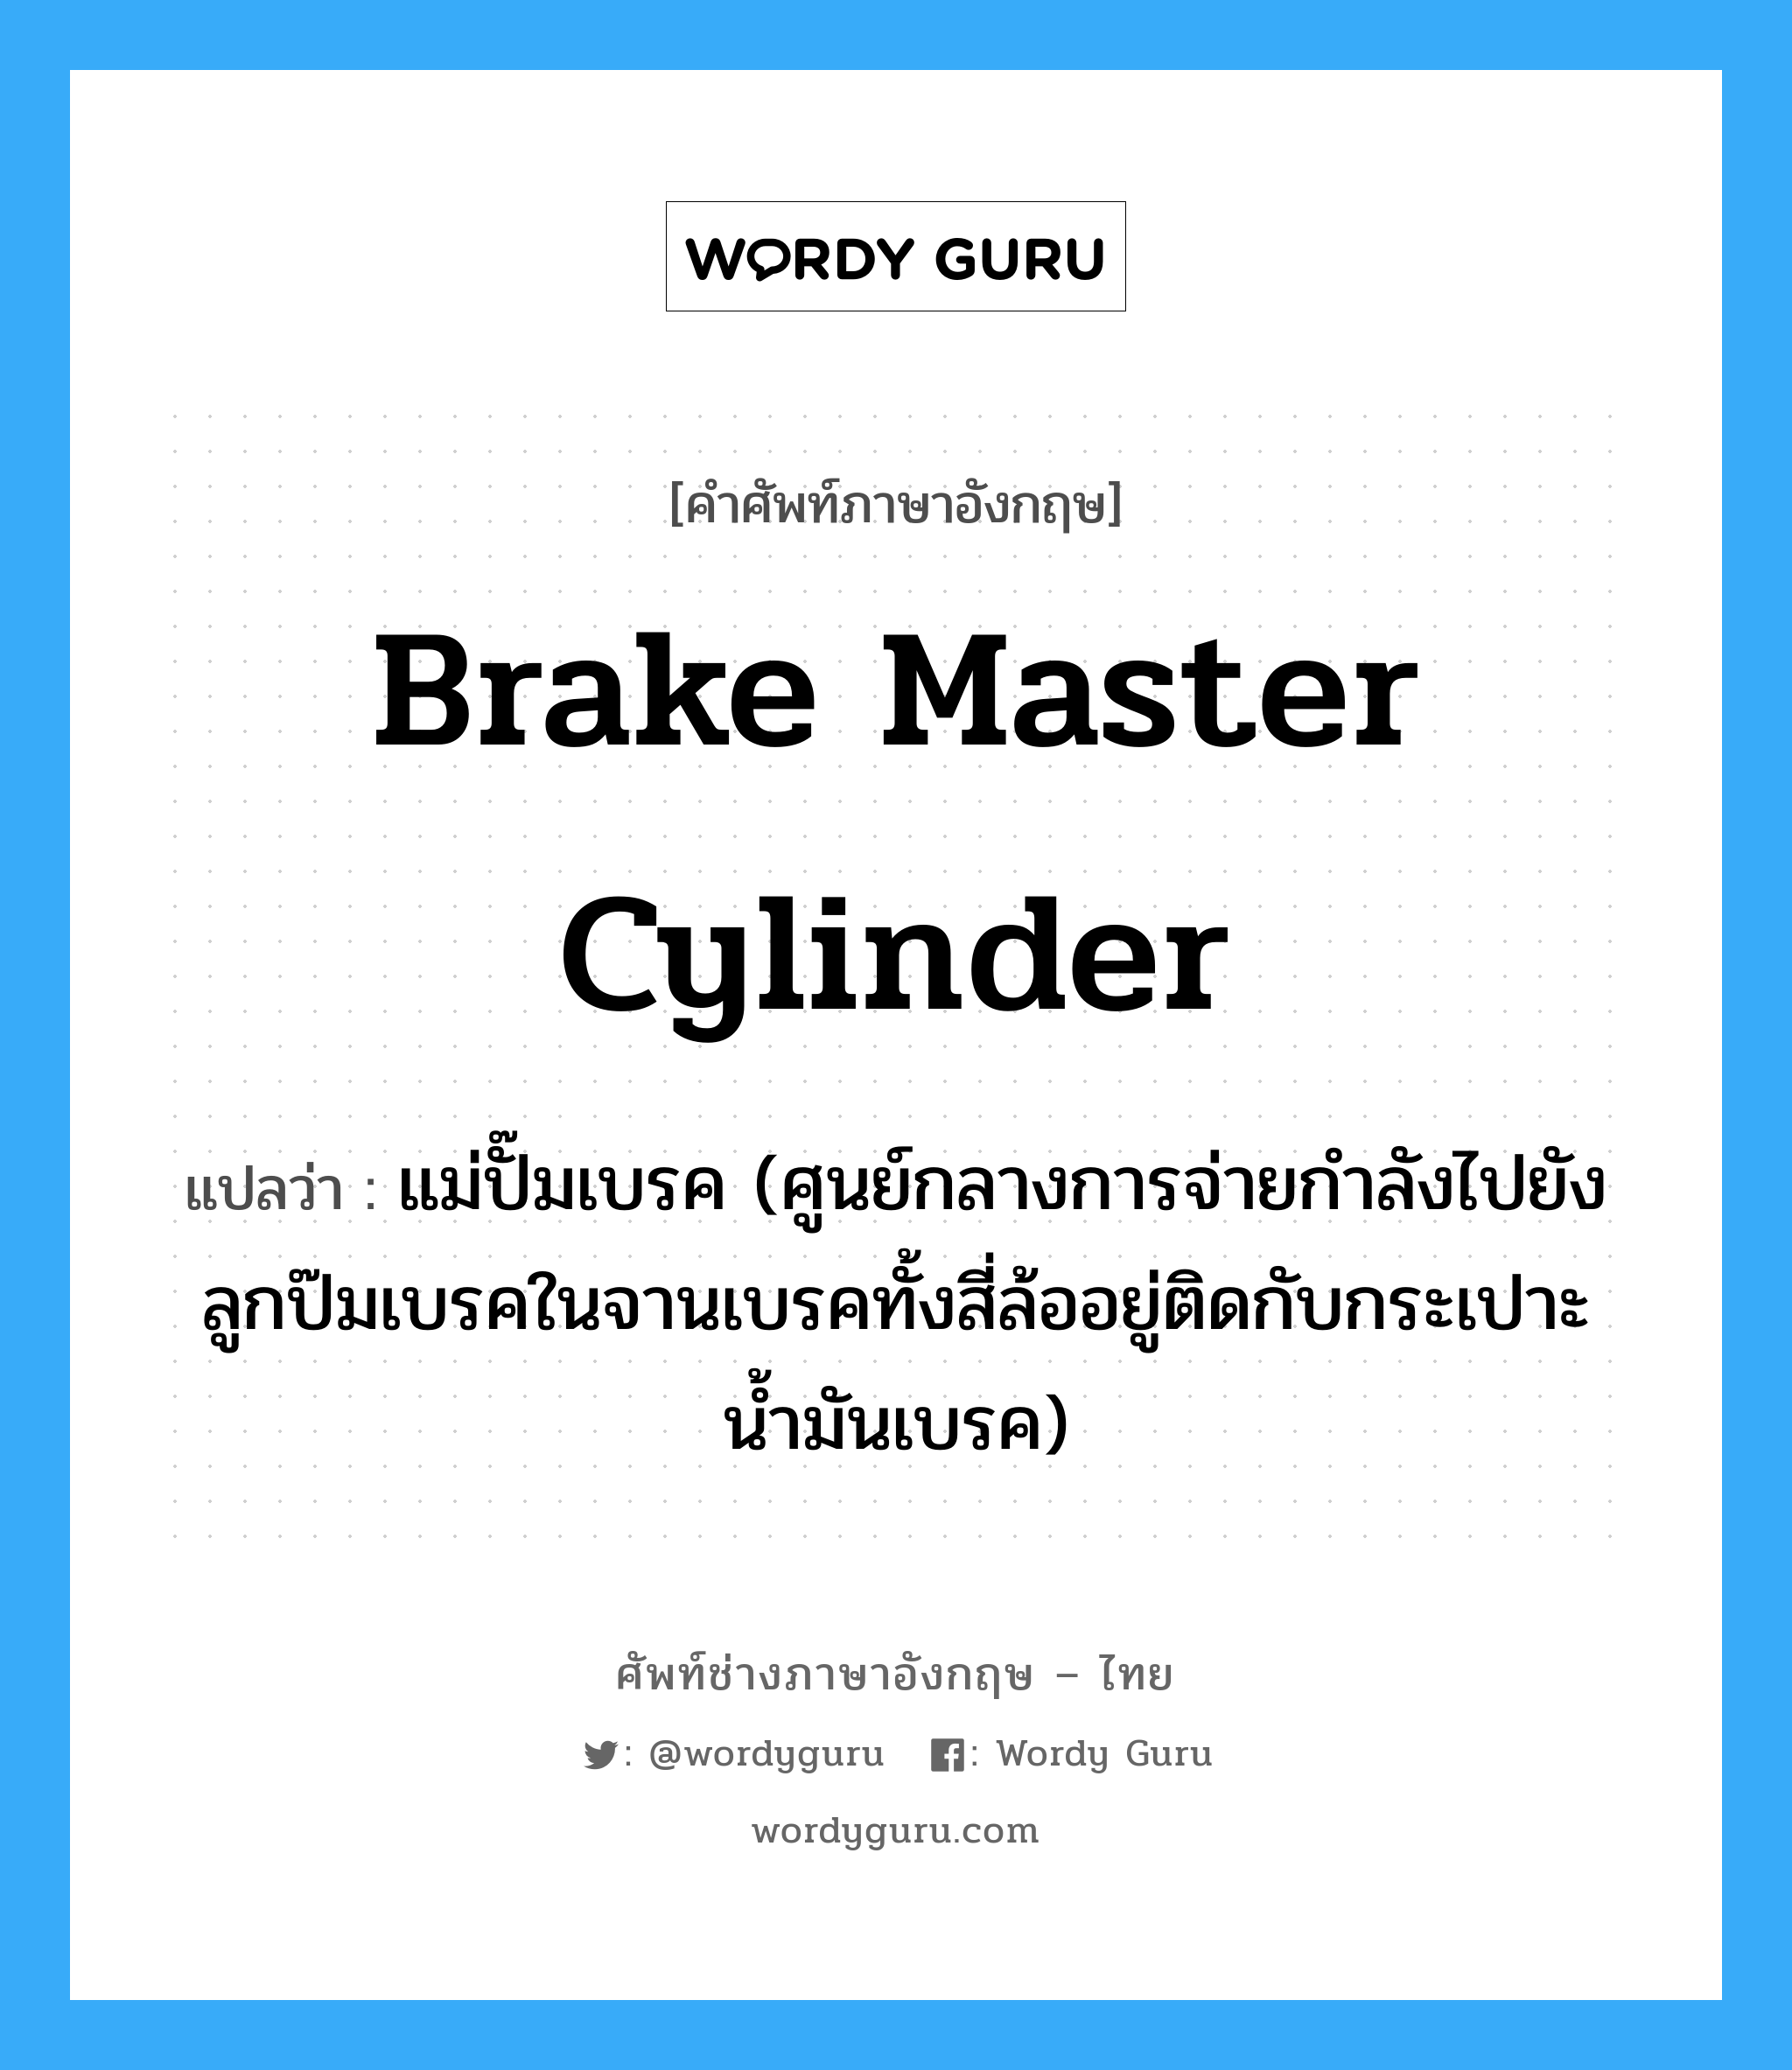 brake master cylinder แปลว่า?, คำศัพท์ช่างภาษาอังกฤษ - ไทย brake master cylinder คำศัพท์ภาษาอังกฤษ brake master cylinder แปลว่า แม่ปั๊มเบรค (ศูนย์กลางการจ่ายกำลังไปยังลูกป๊มเบรคในจานเบรคทั้งสี่ล้ออยู่ติดกับกระเปาะน้ำมันเบรค)